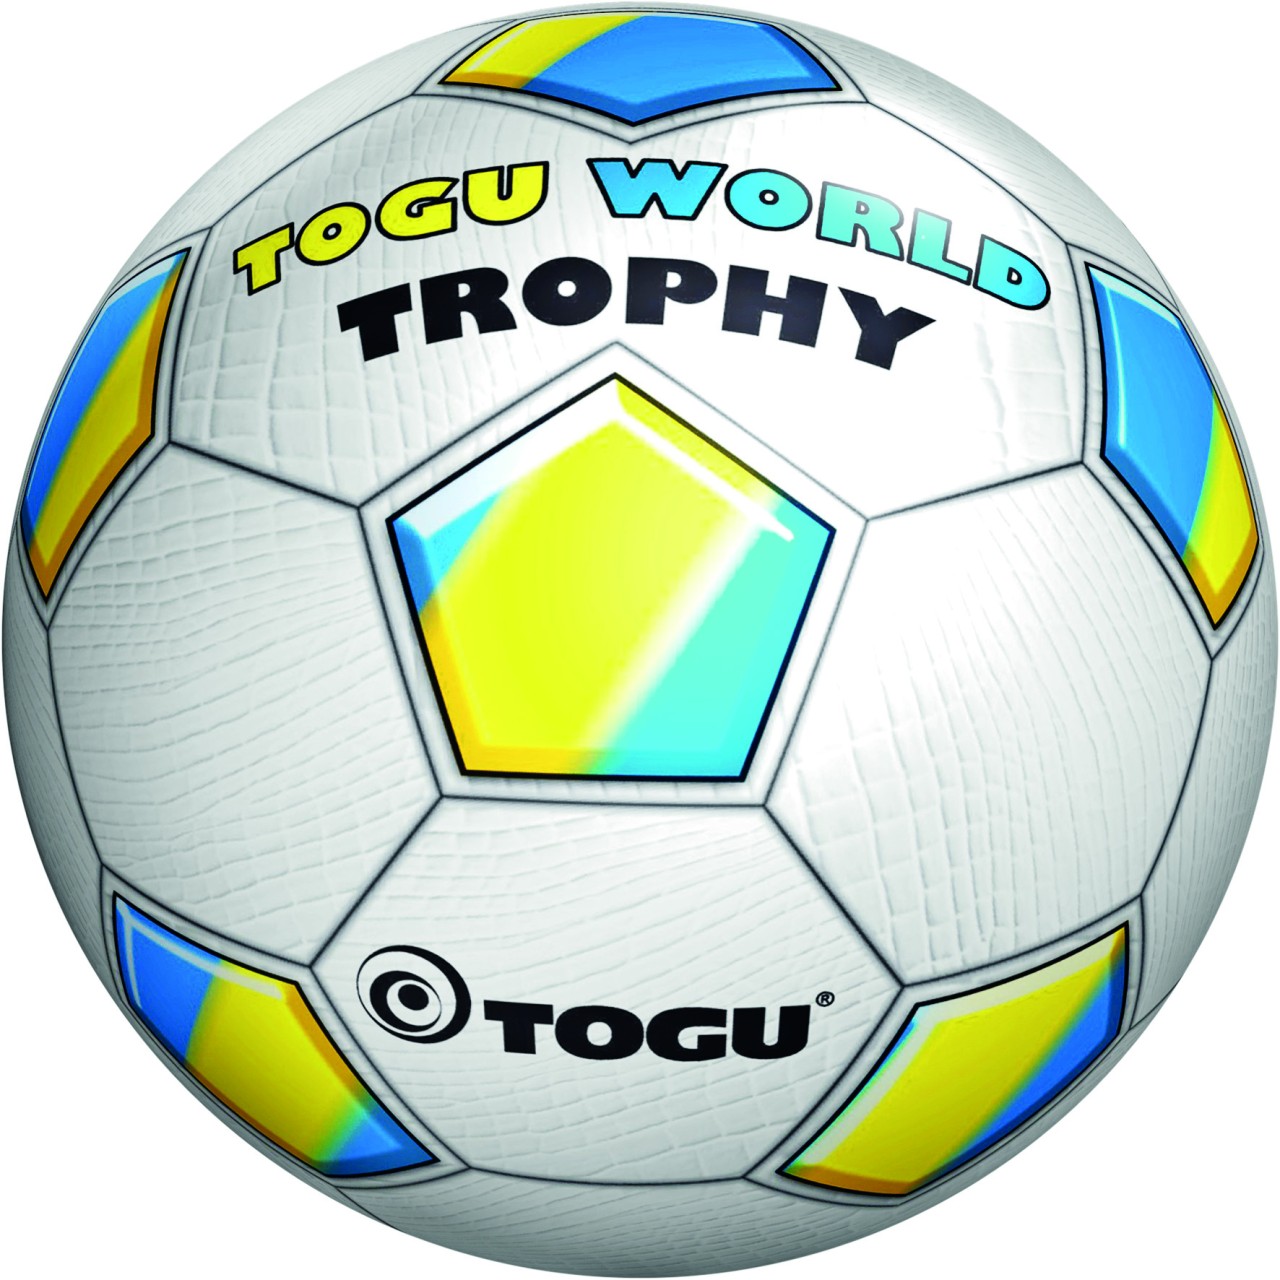 TOGU World Trophy